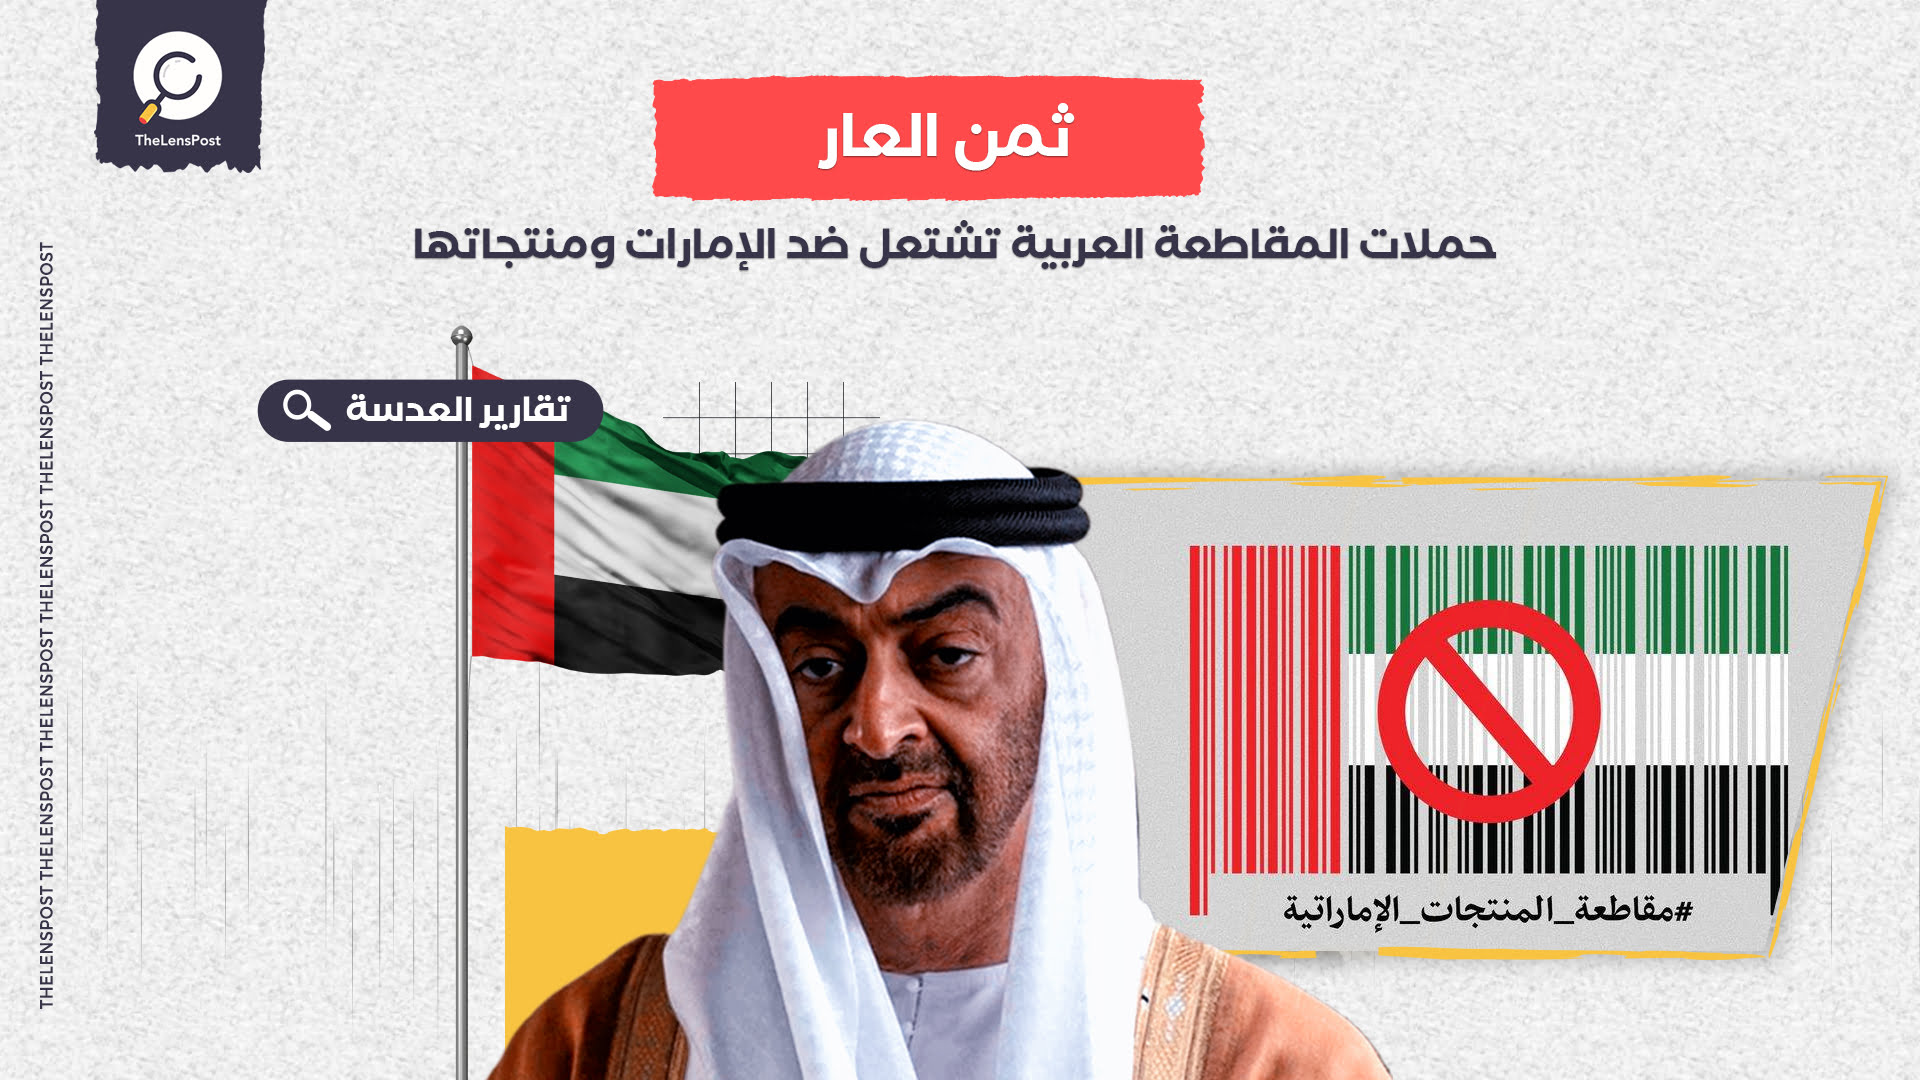 عقاب الخيانة والتطبيع.. حملات المقاطعة العربية تشتعل ضد الإمارات ومنتجاتها  - العدسة